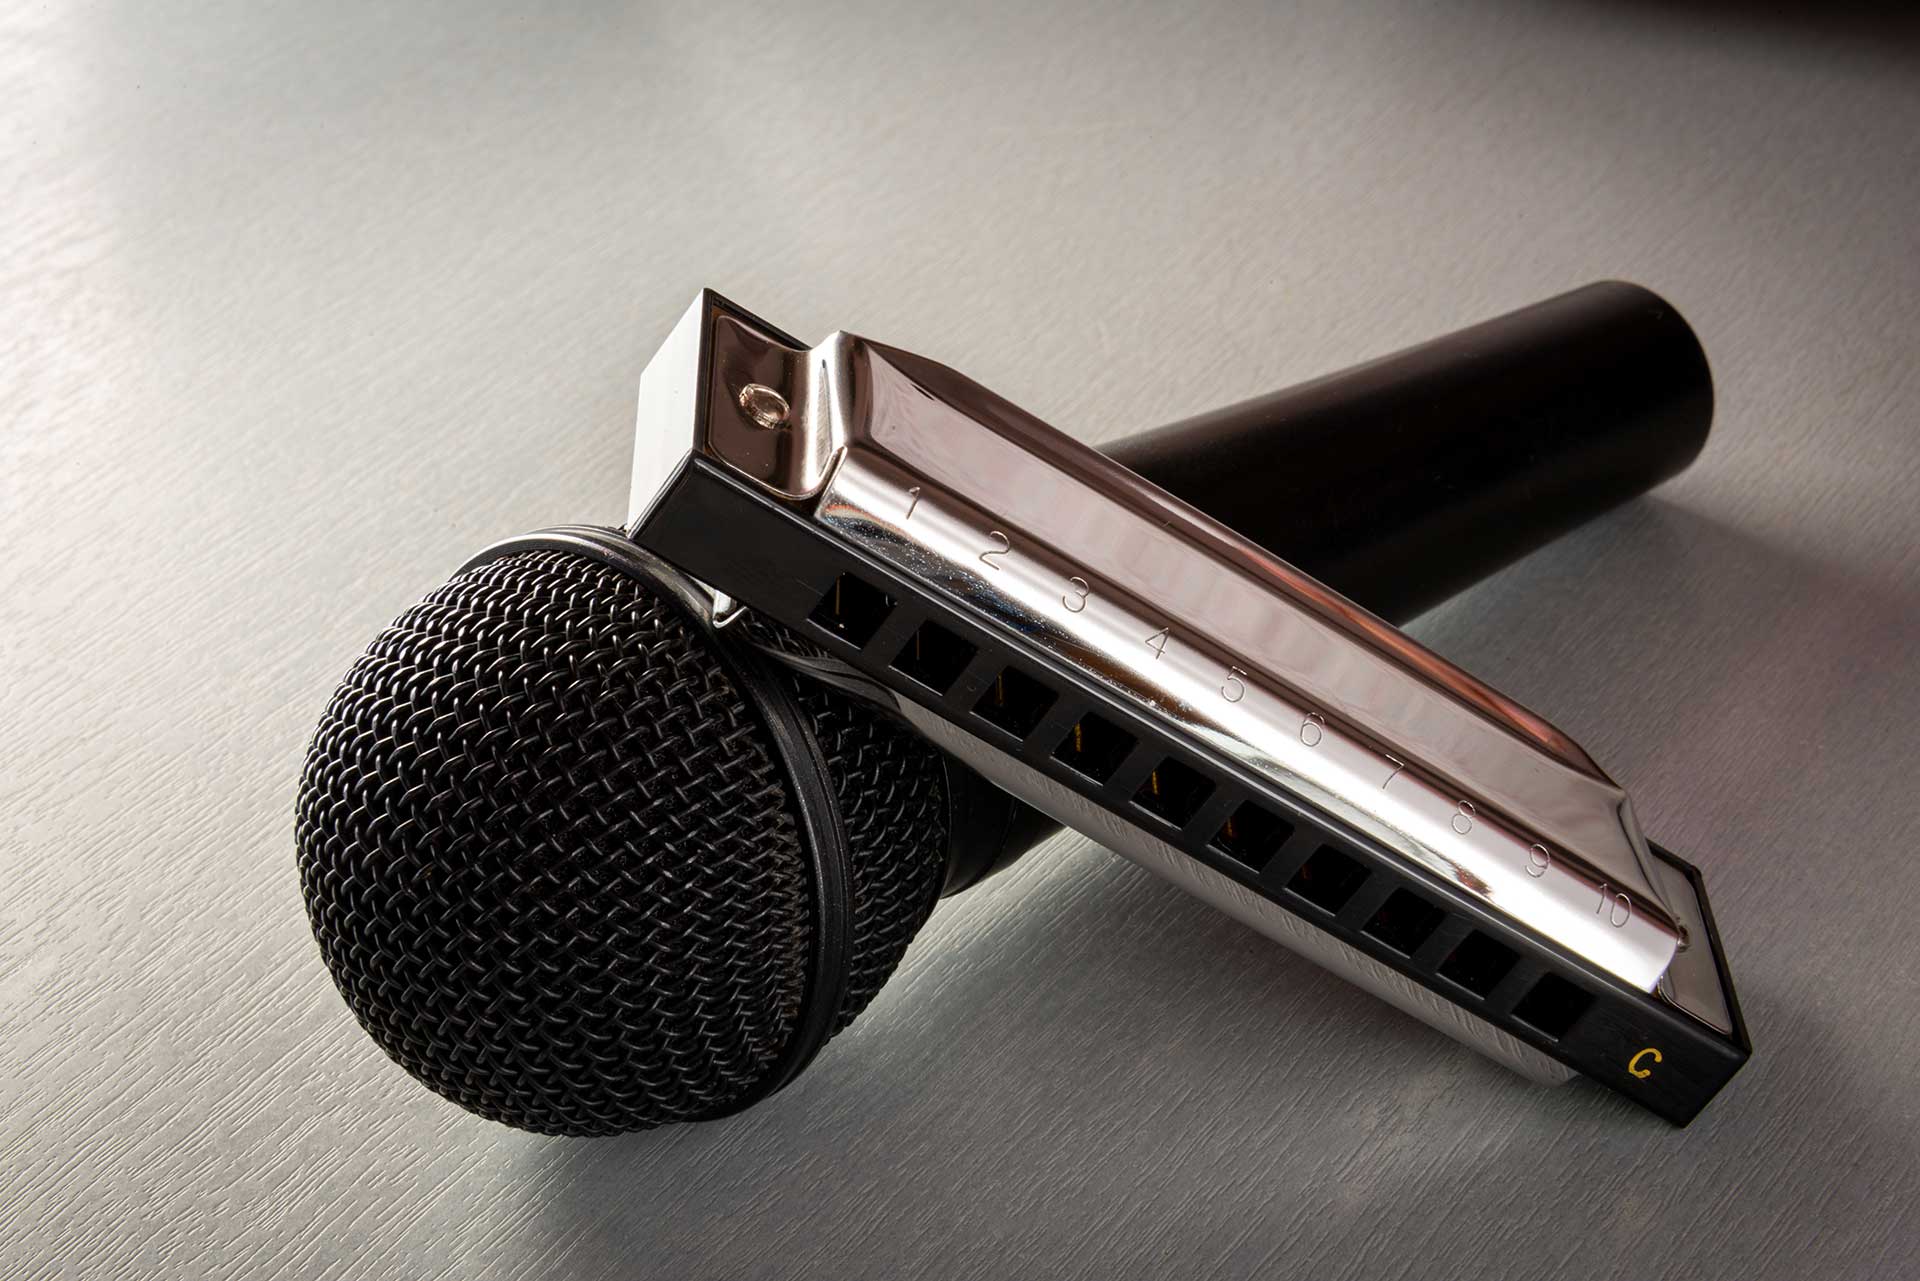 mic and harmonica